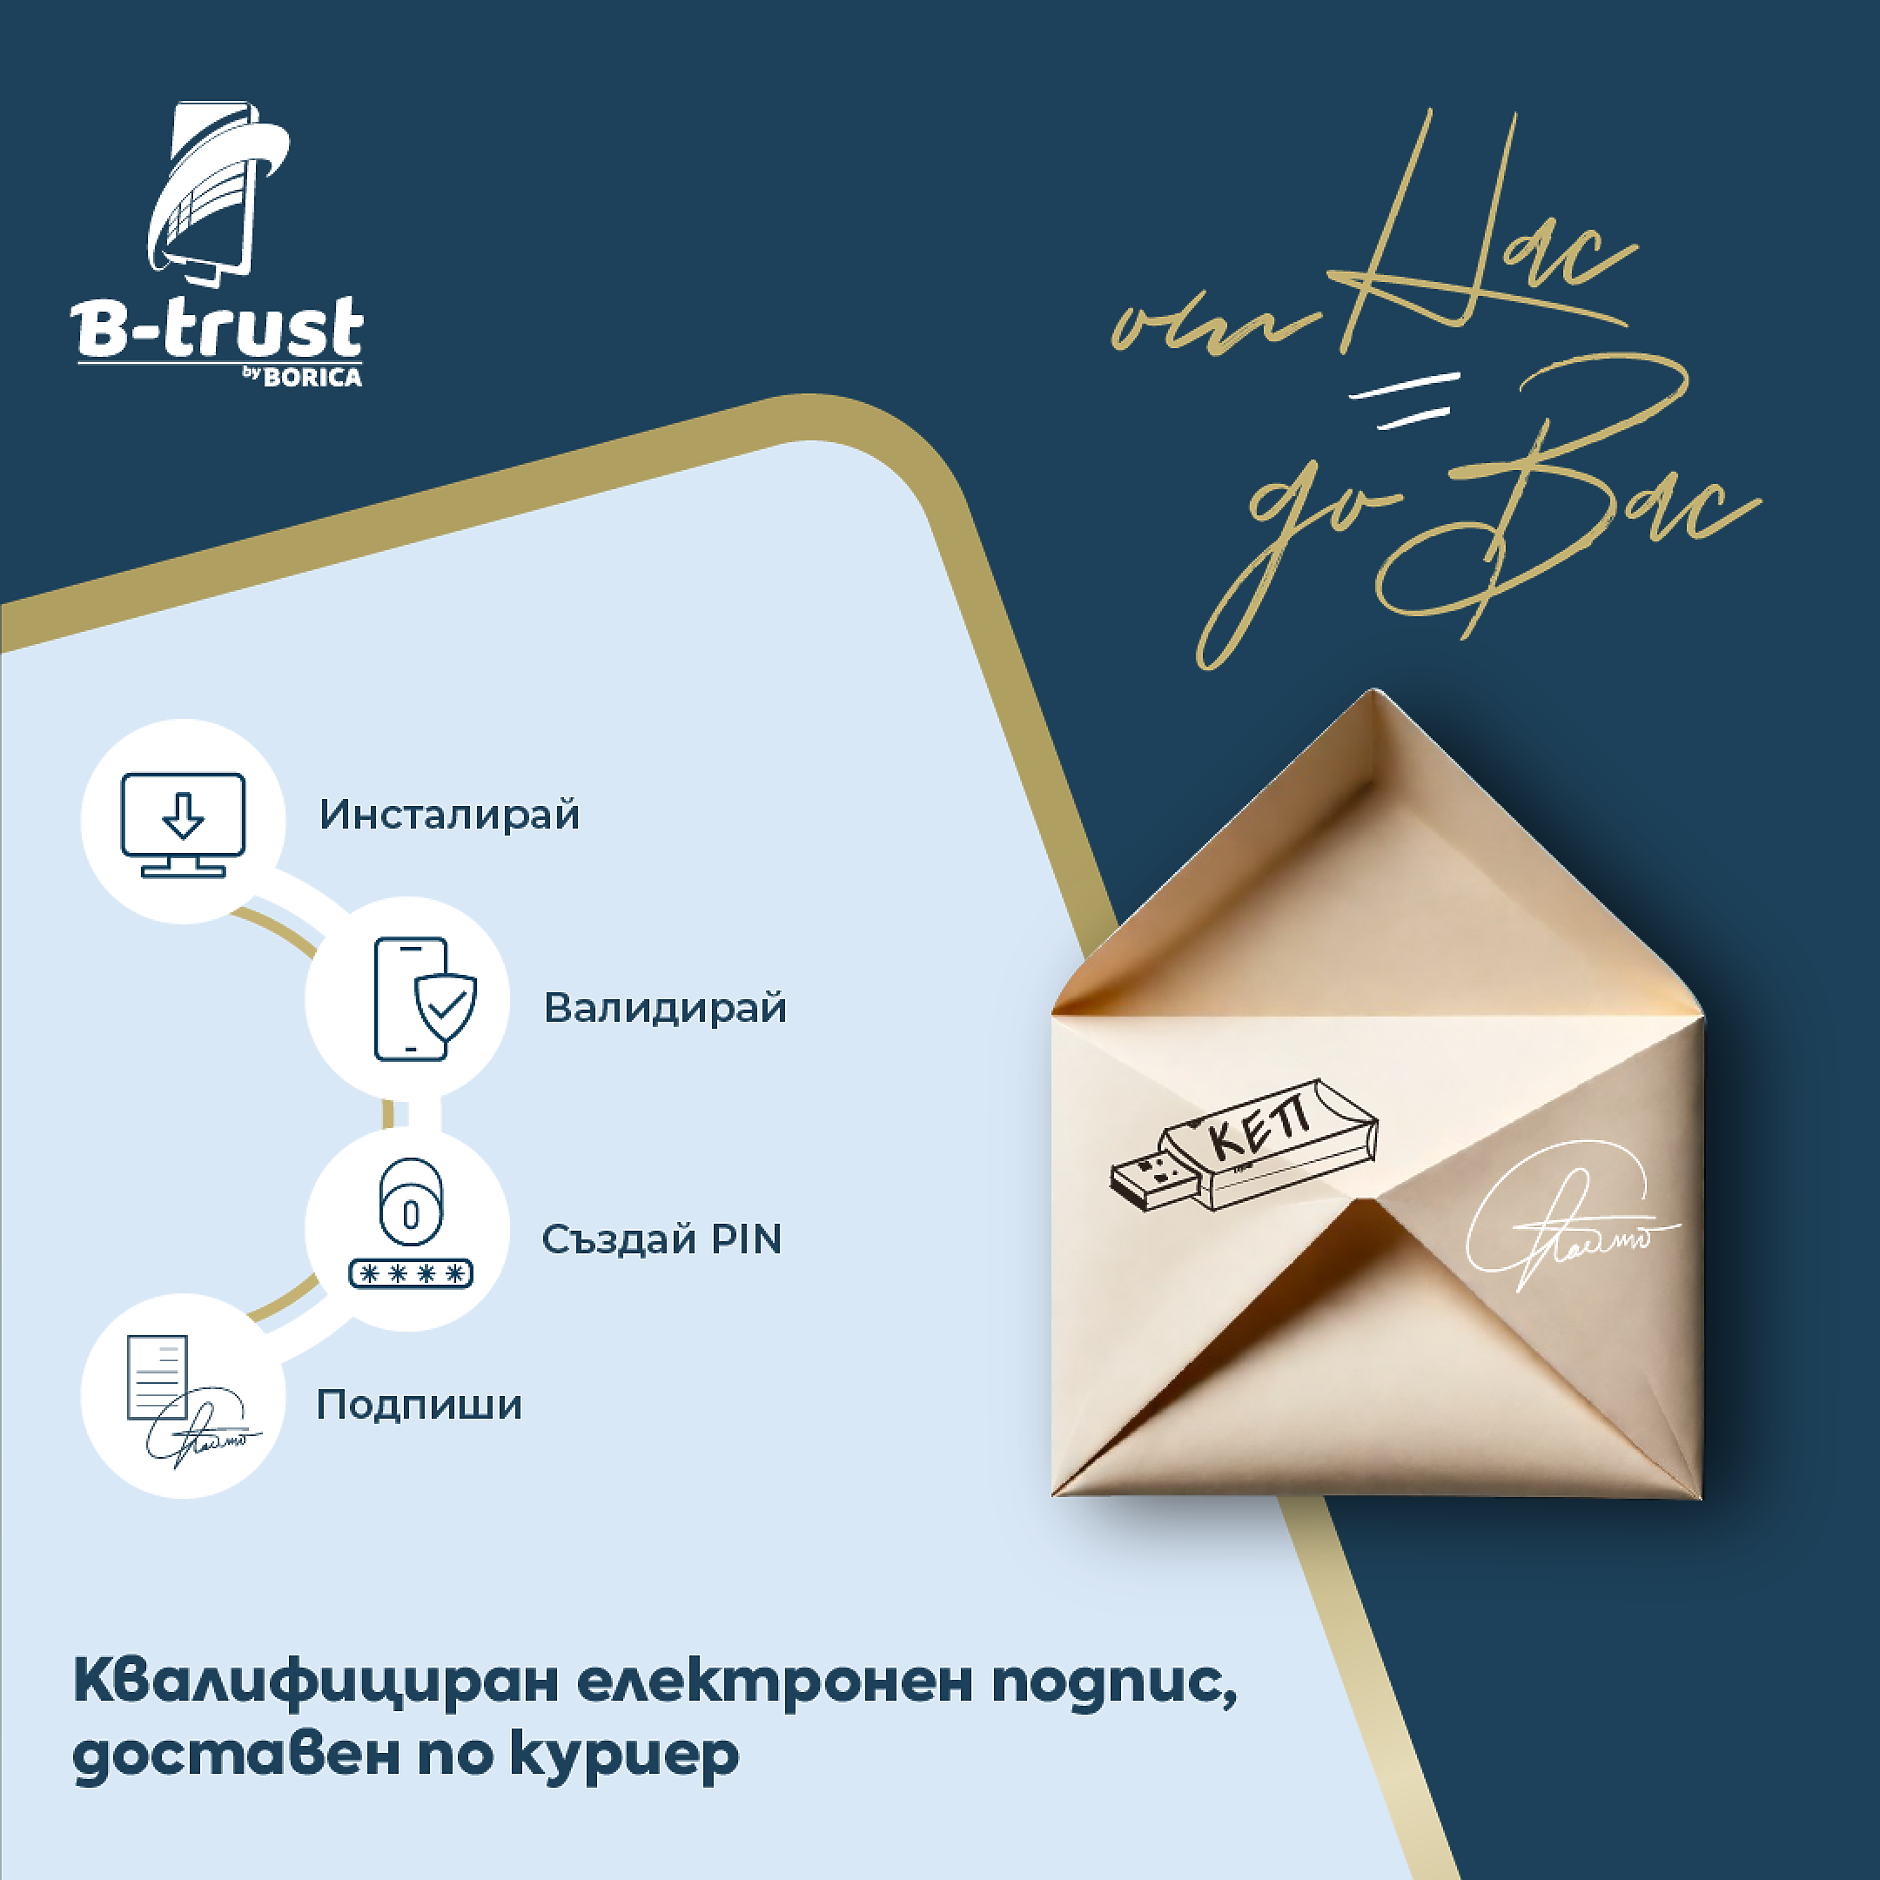 Квалифицираният електронен подпис B-Trust вече с доставка до адрес, без необходимост от явяване в офис